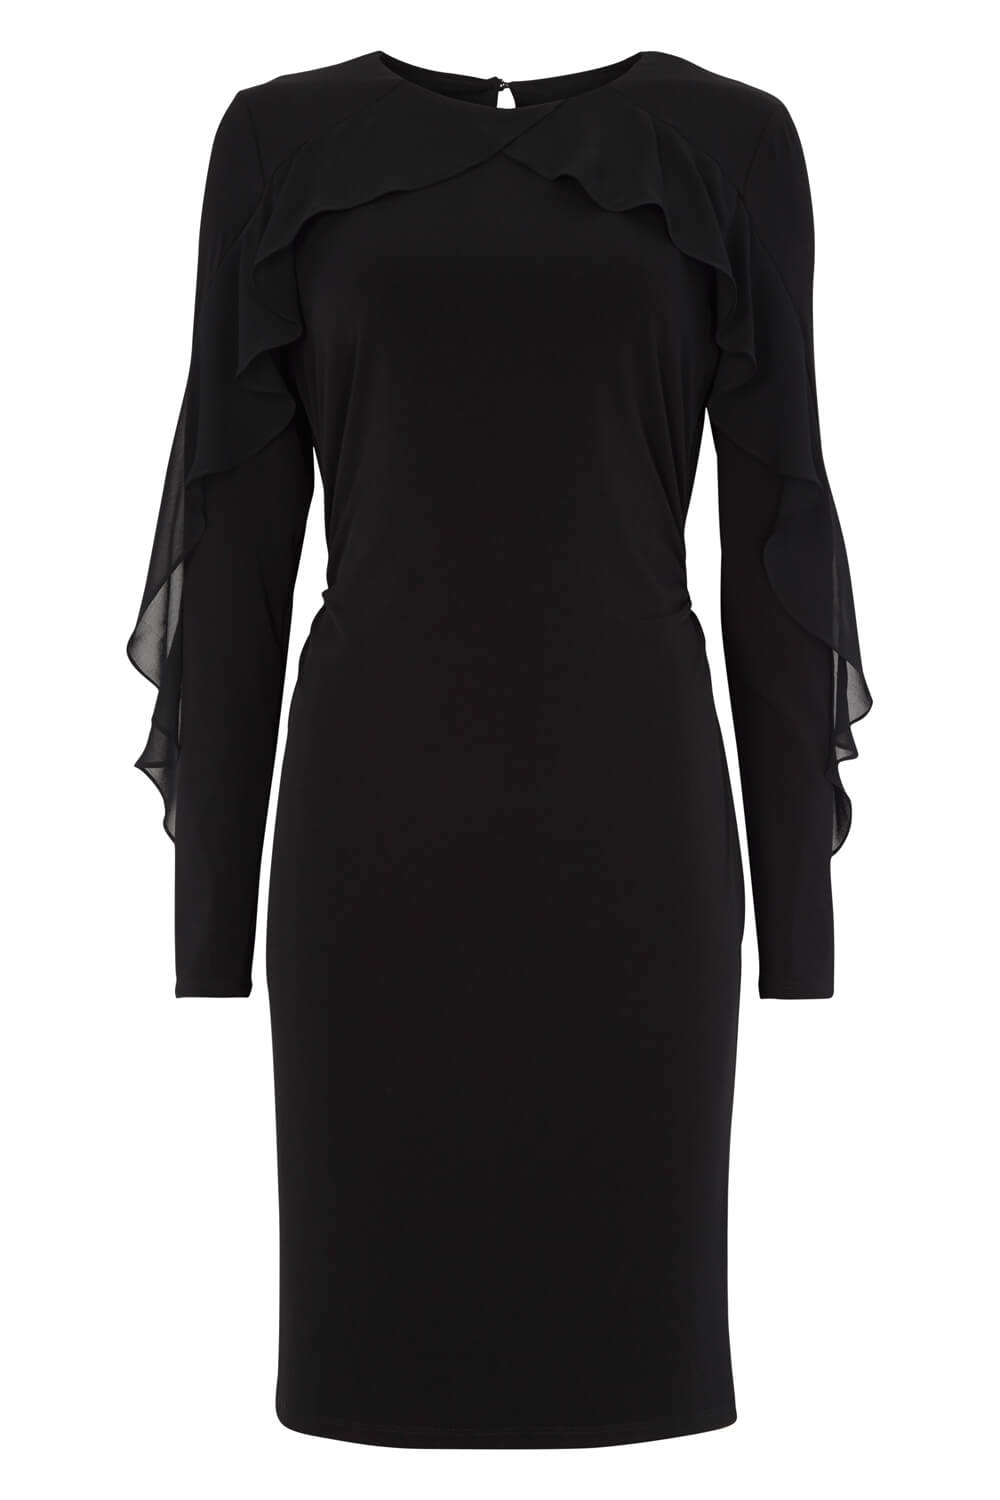 Black Chiffon Ruffle Sleeve Dress, Image 4 of 4